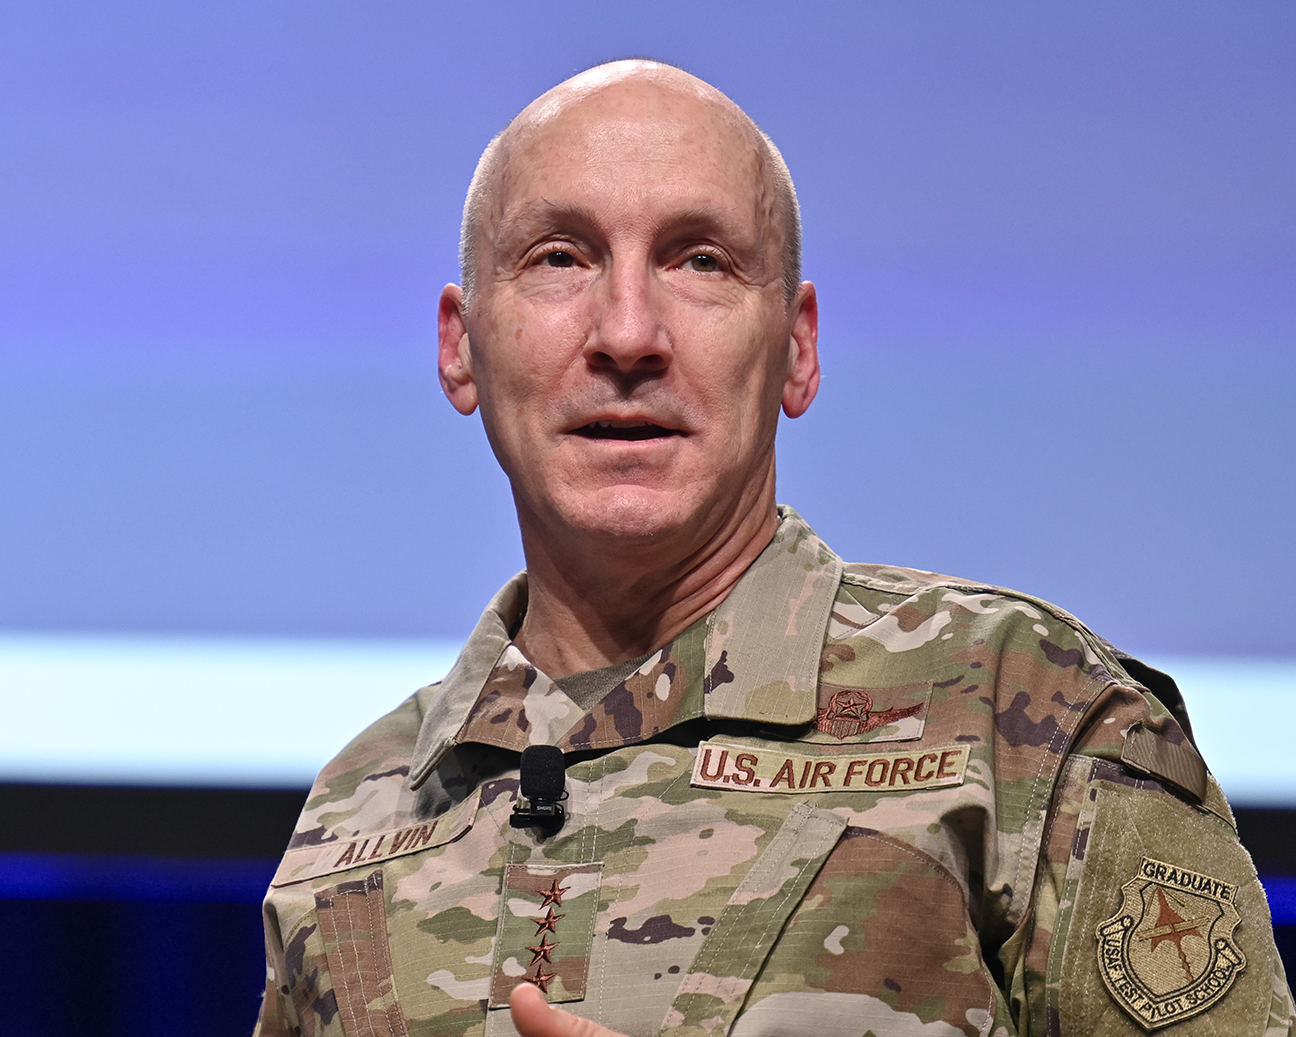 Chief of Staff Gen Allvin speaks at Warfare Symposium